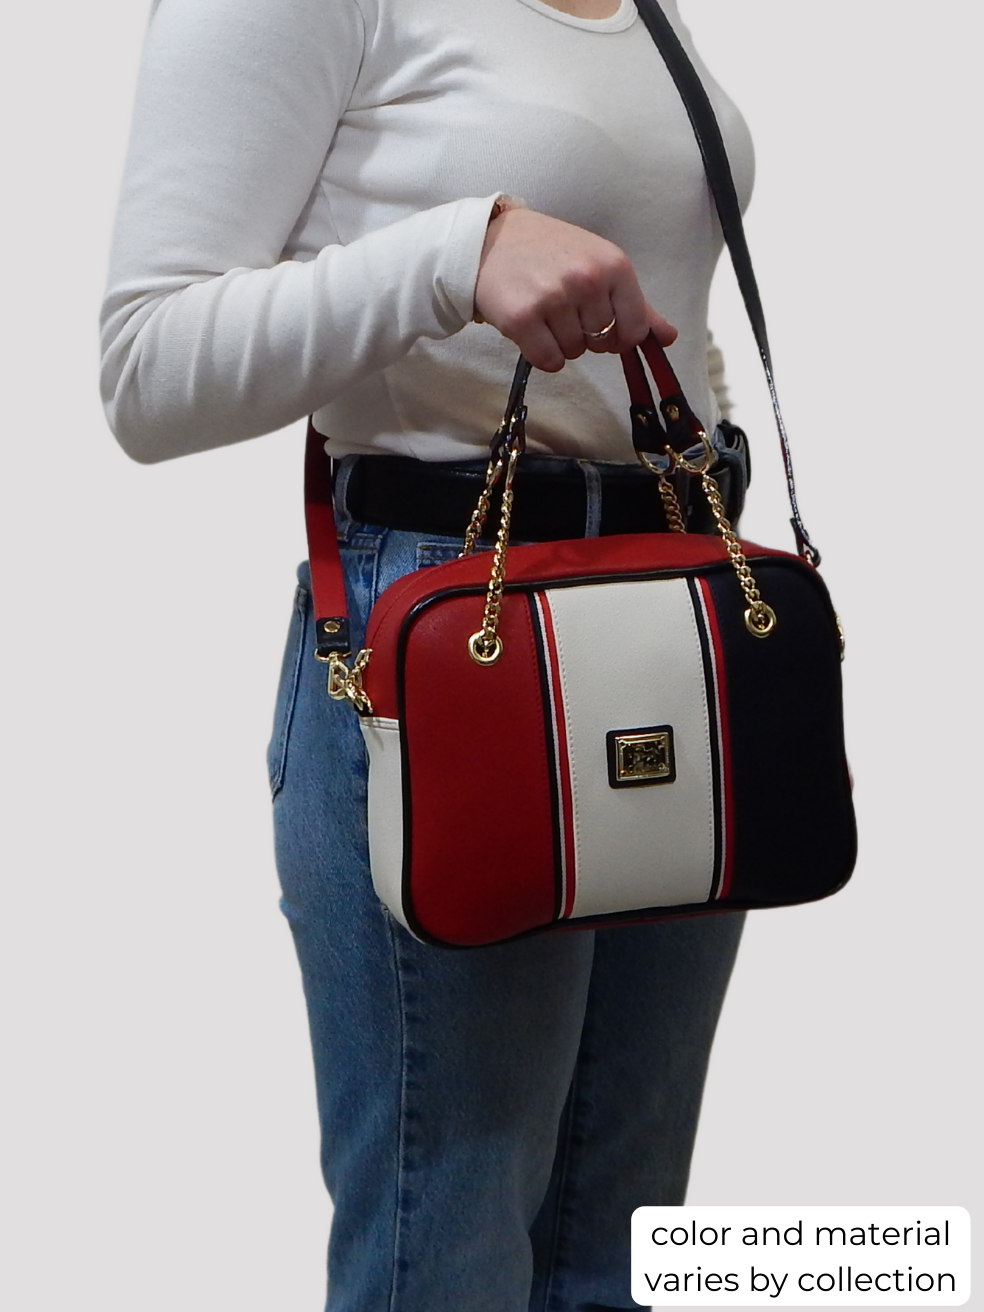 #color_ Red | Cavalinho Gallop Patent Leather Handbag - Red - bodyshot_0512_1_18e8fa78-e8b1-4f87-b87c-885cc62c8376